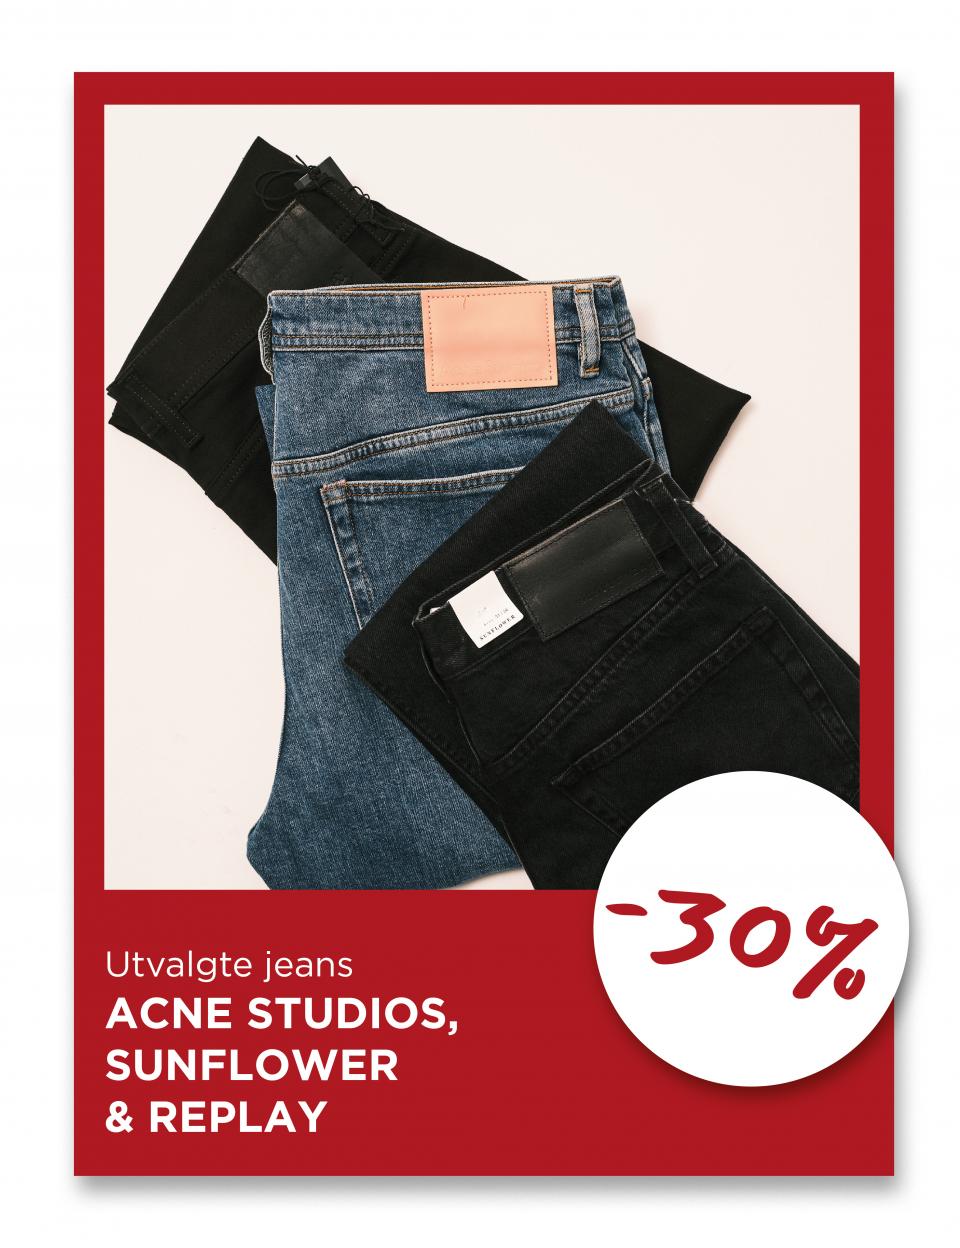 utvalgte Jeans fra Acne Studios, Sunflower og replay, -30%